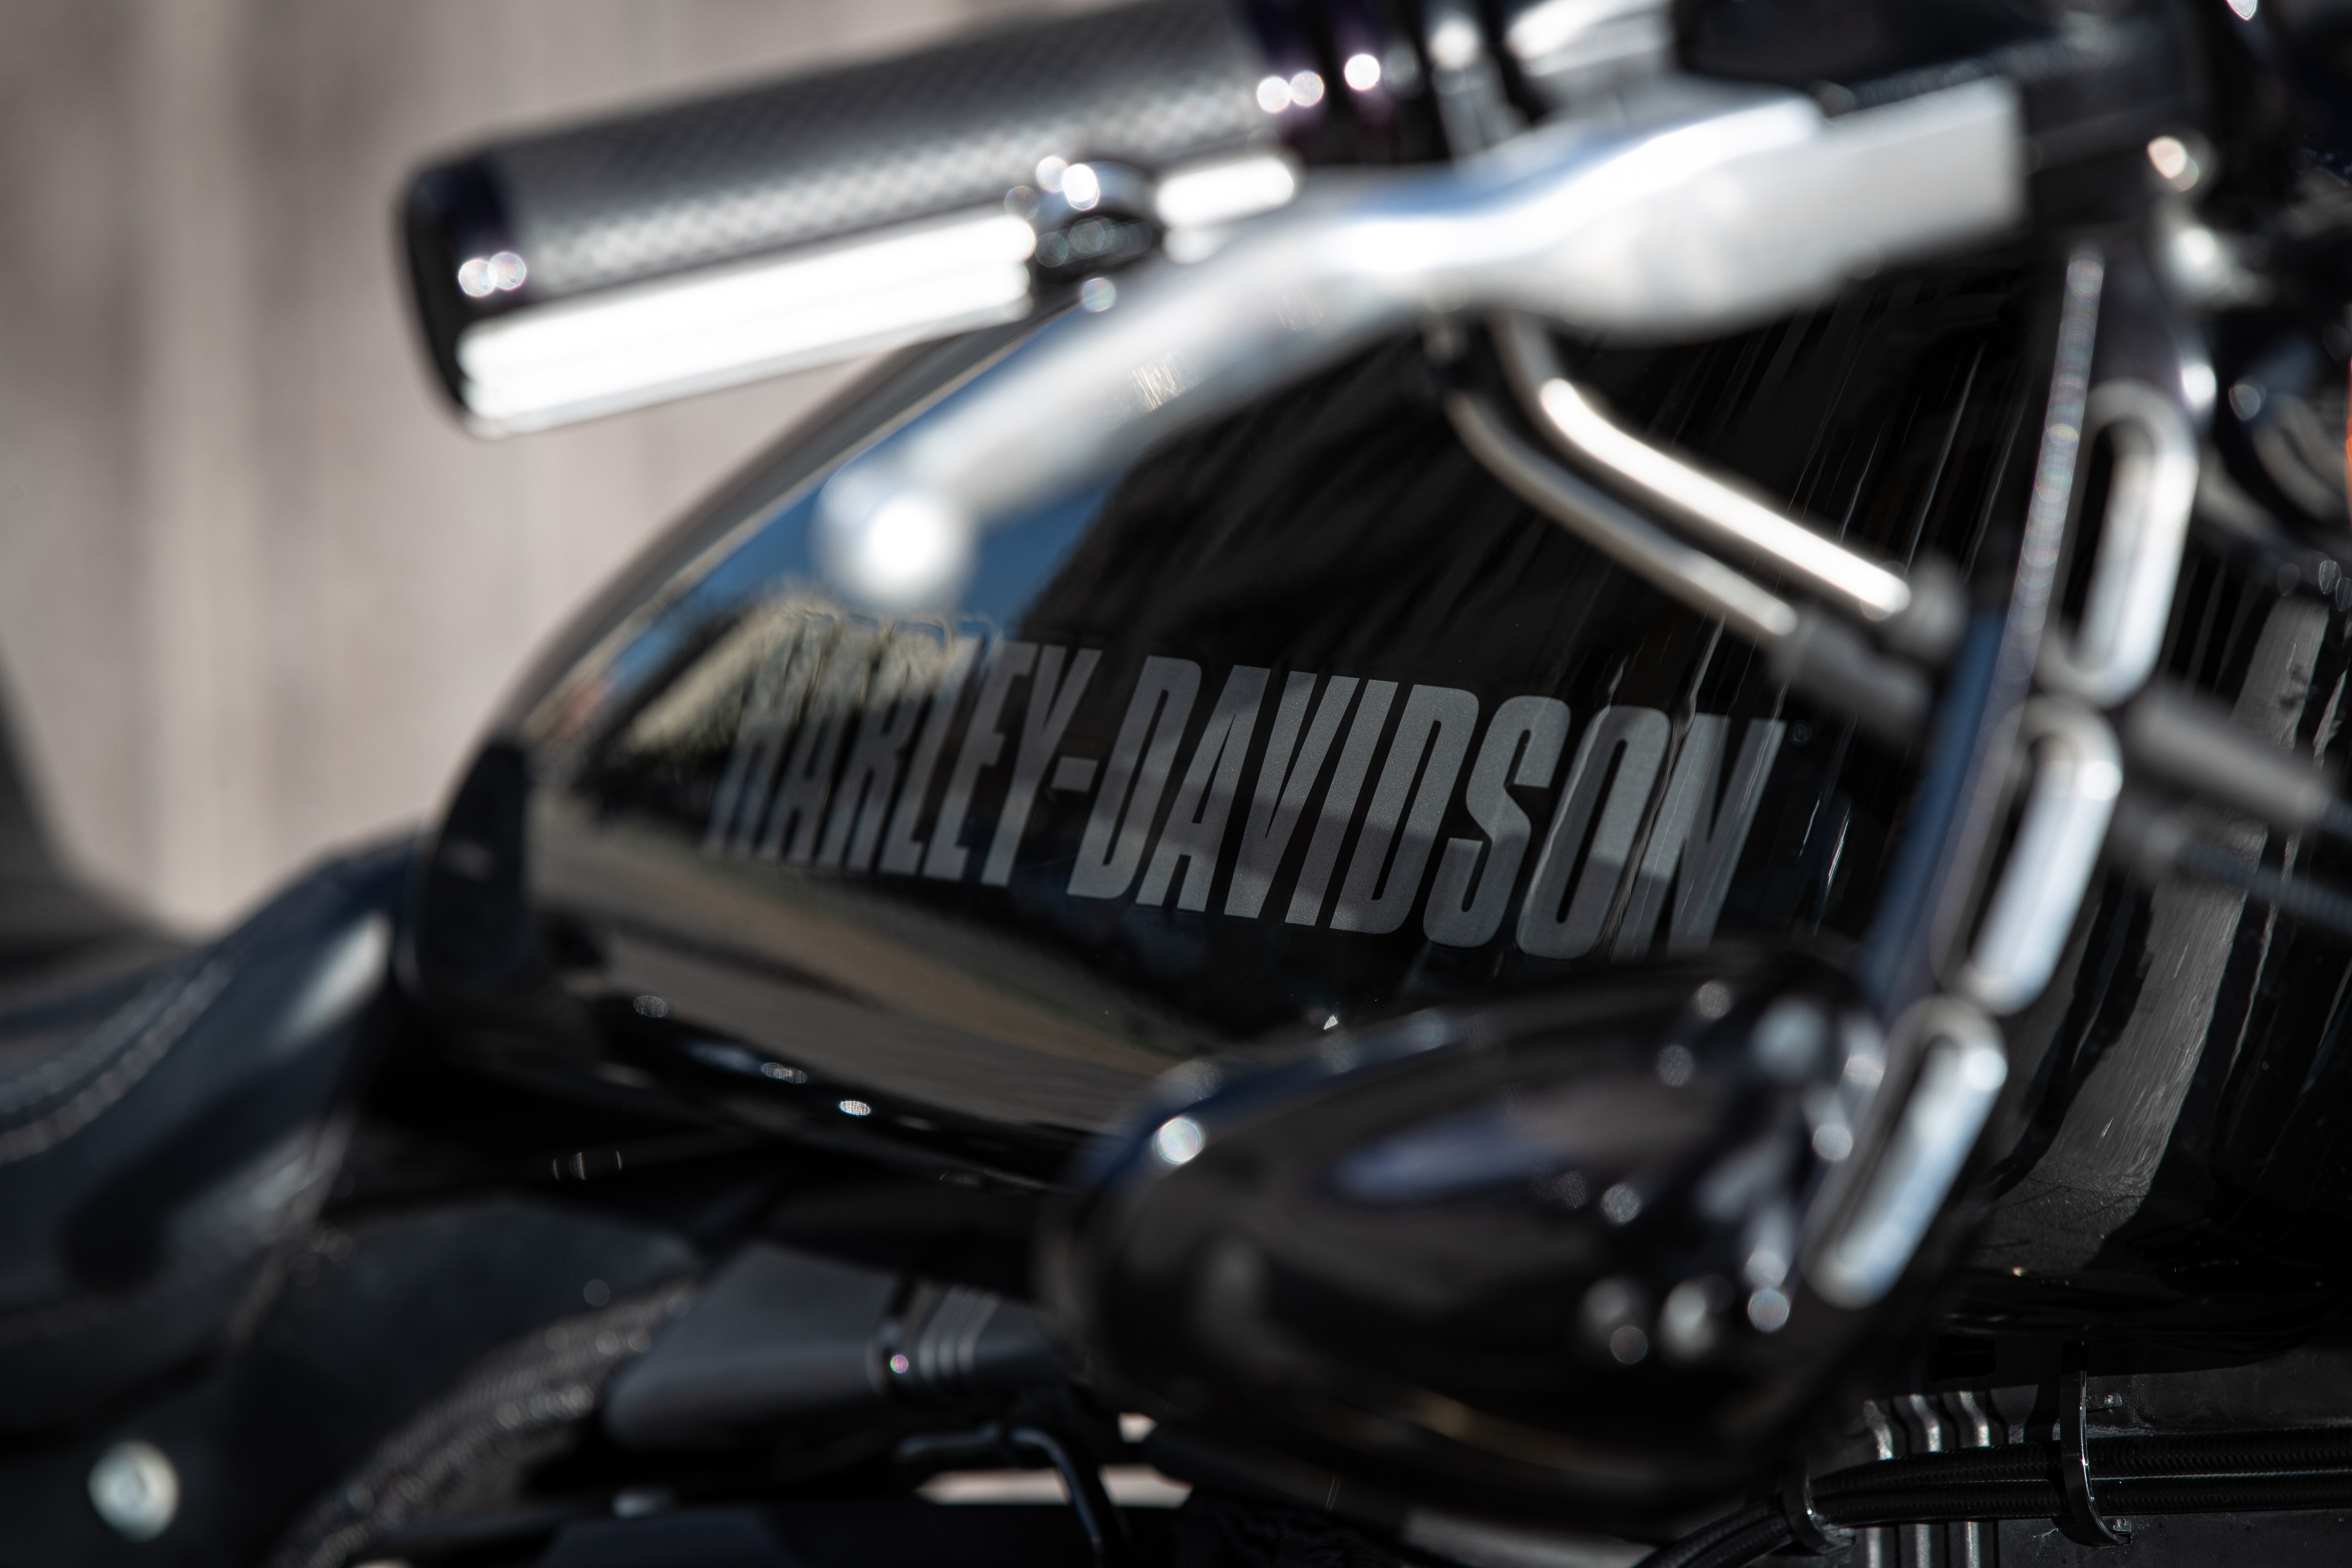 Ngam dan xe Harley-Davidson Sportster lot xac voi ban do Sykes hinh anh 31 2020_Harley_Davidson_Sportster_Custom_5252.jpg